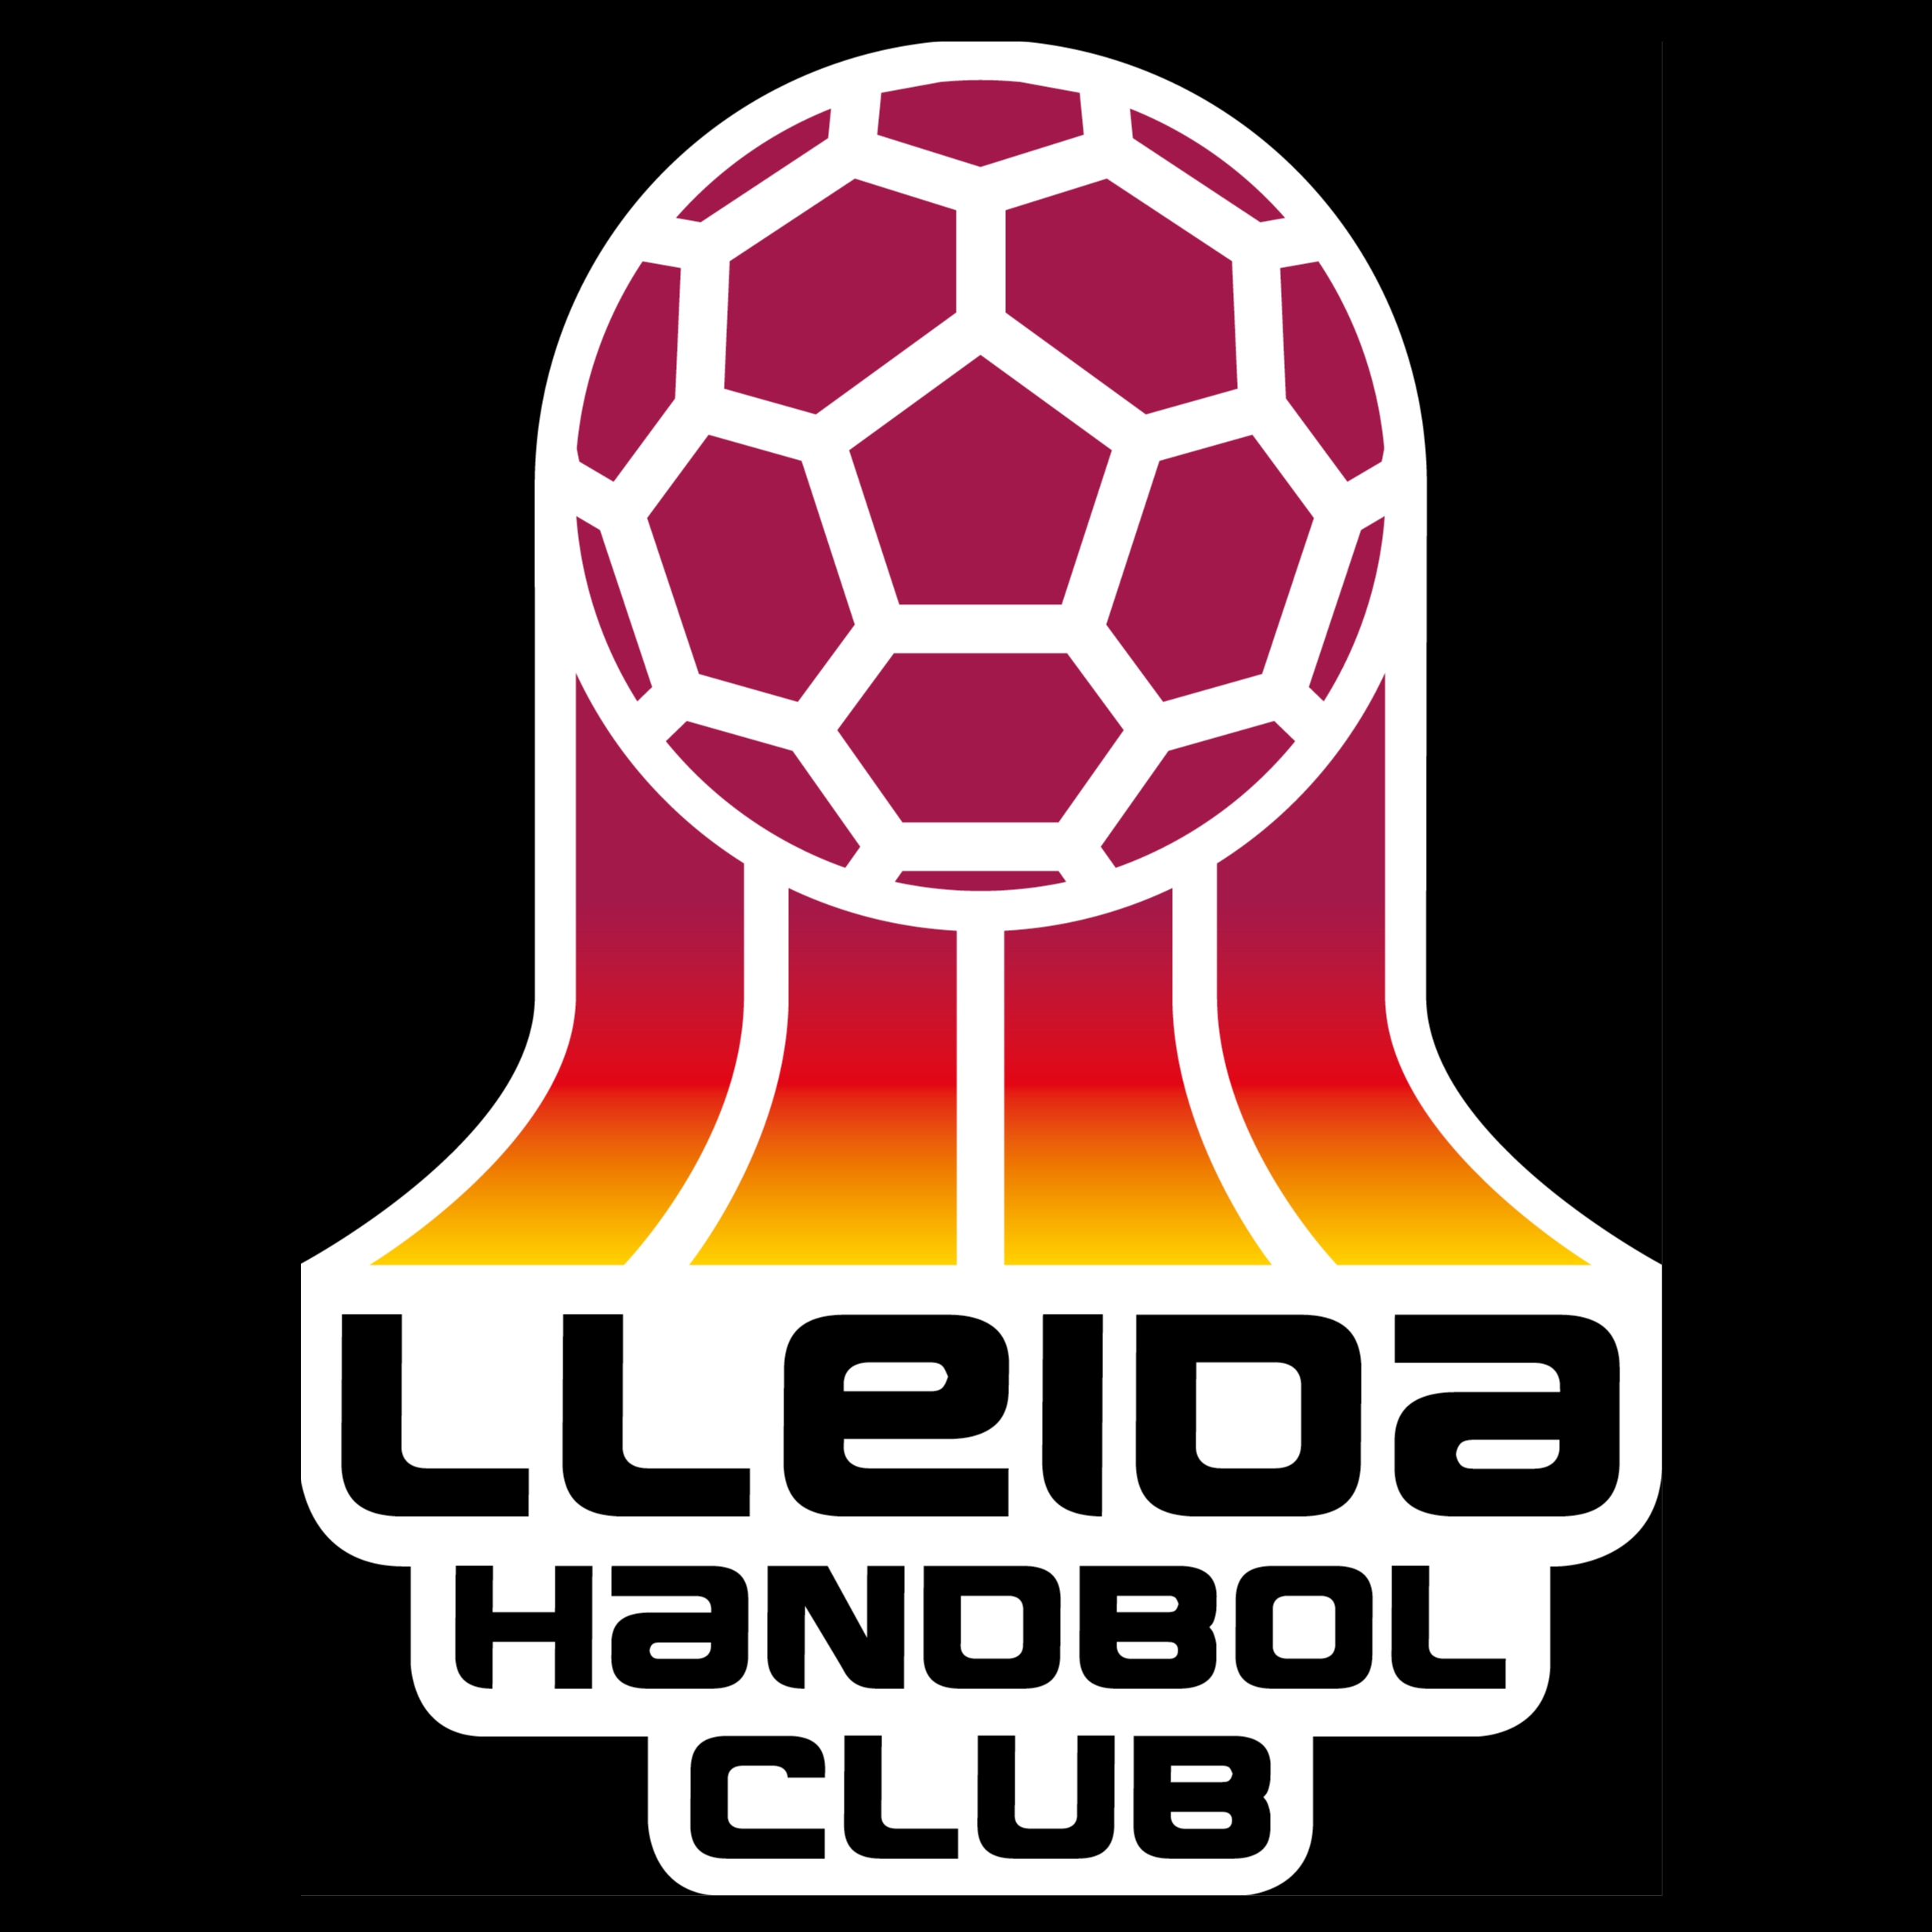 LLEIDA HANDBOL CLUB "B"